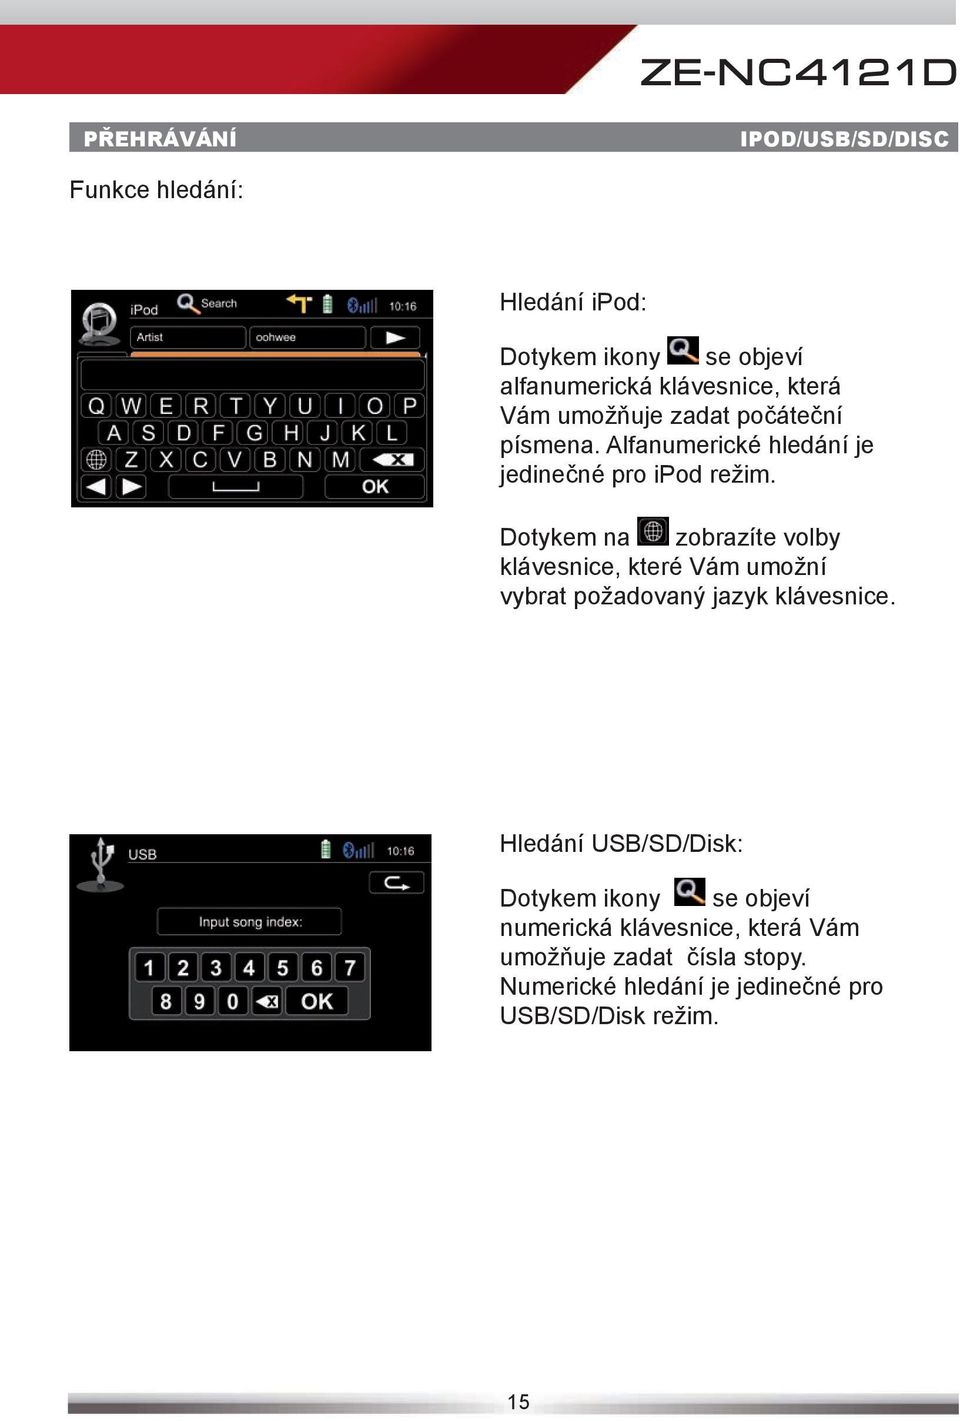 Dotykem na zobrazíte volby klávesnice, které Vám umožní vybrat požadovaný jazyk klávesnice.